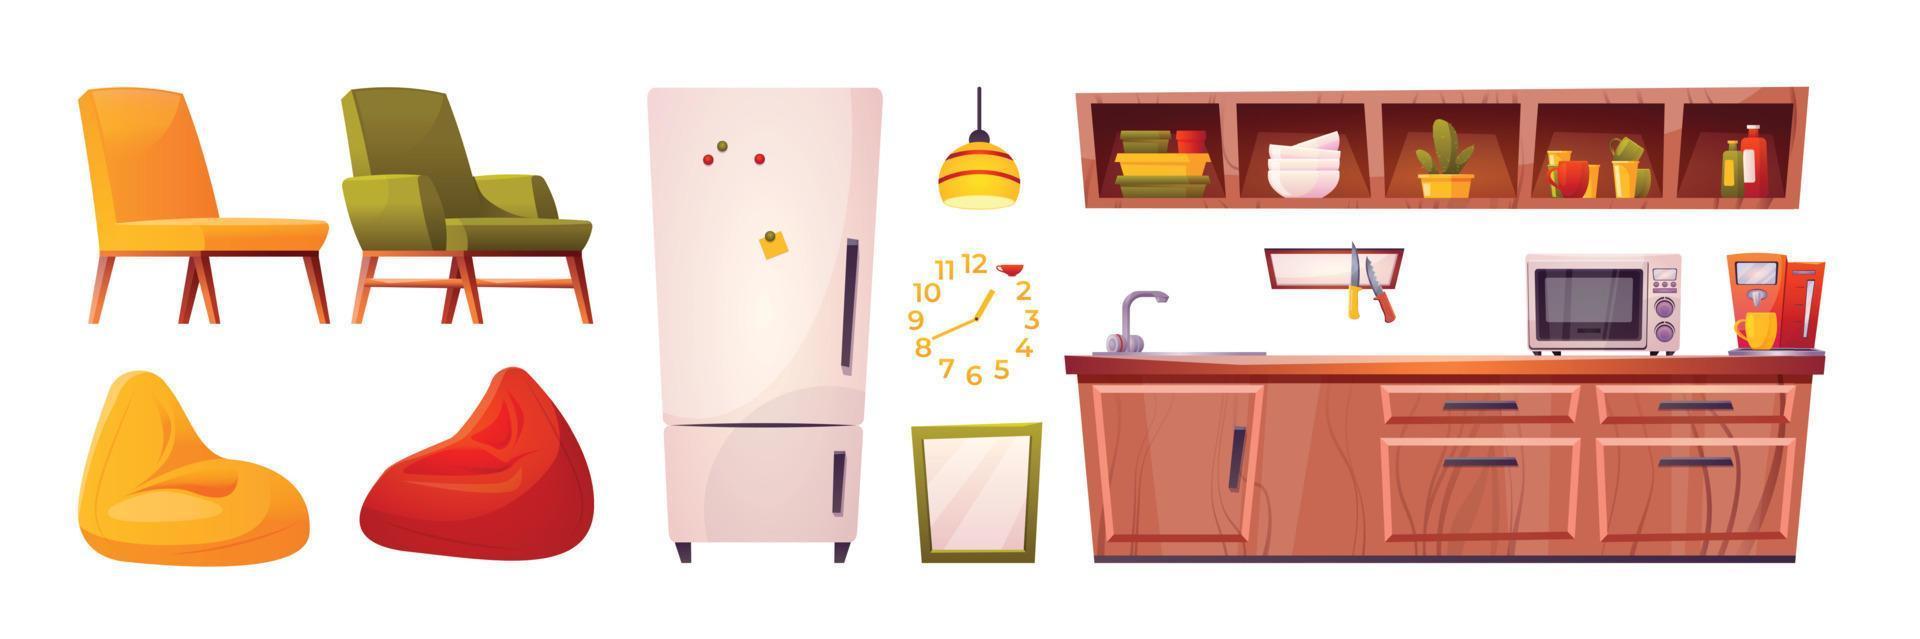 desenho animado conjunto do Hostel cozinha mobília em branco vetor